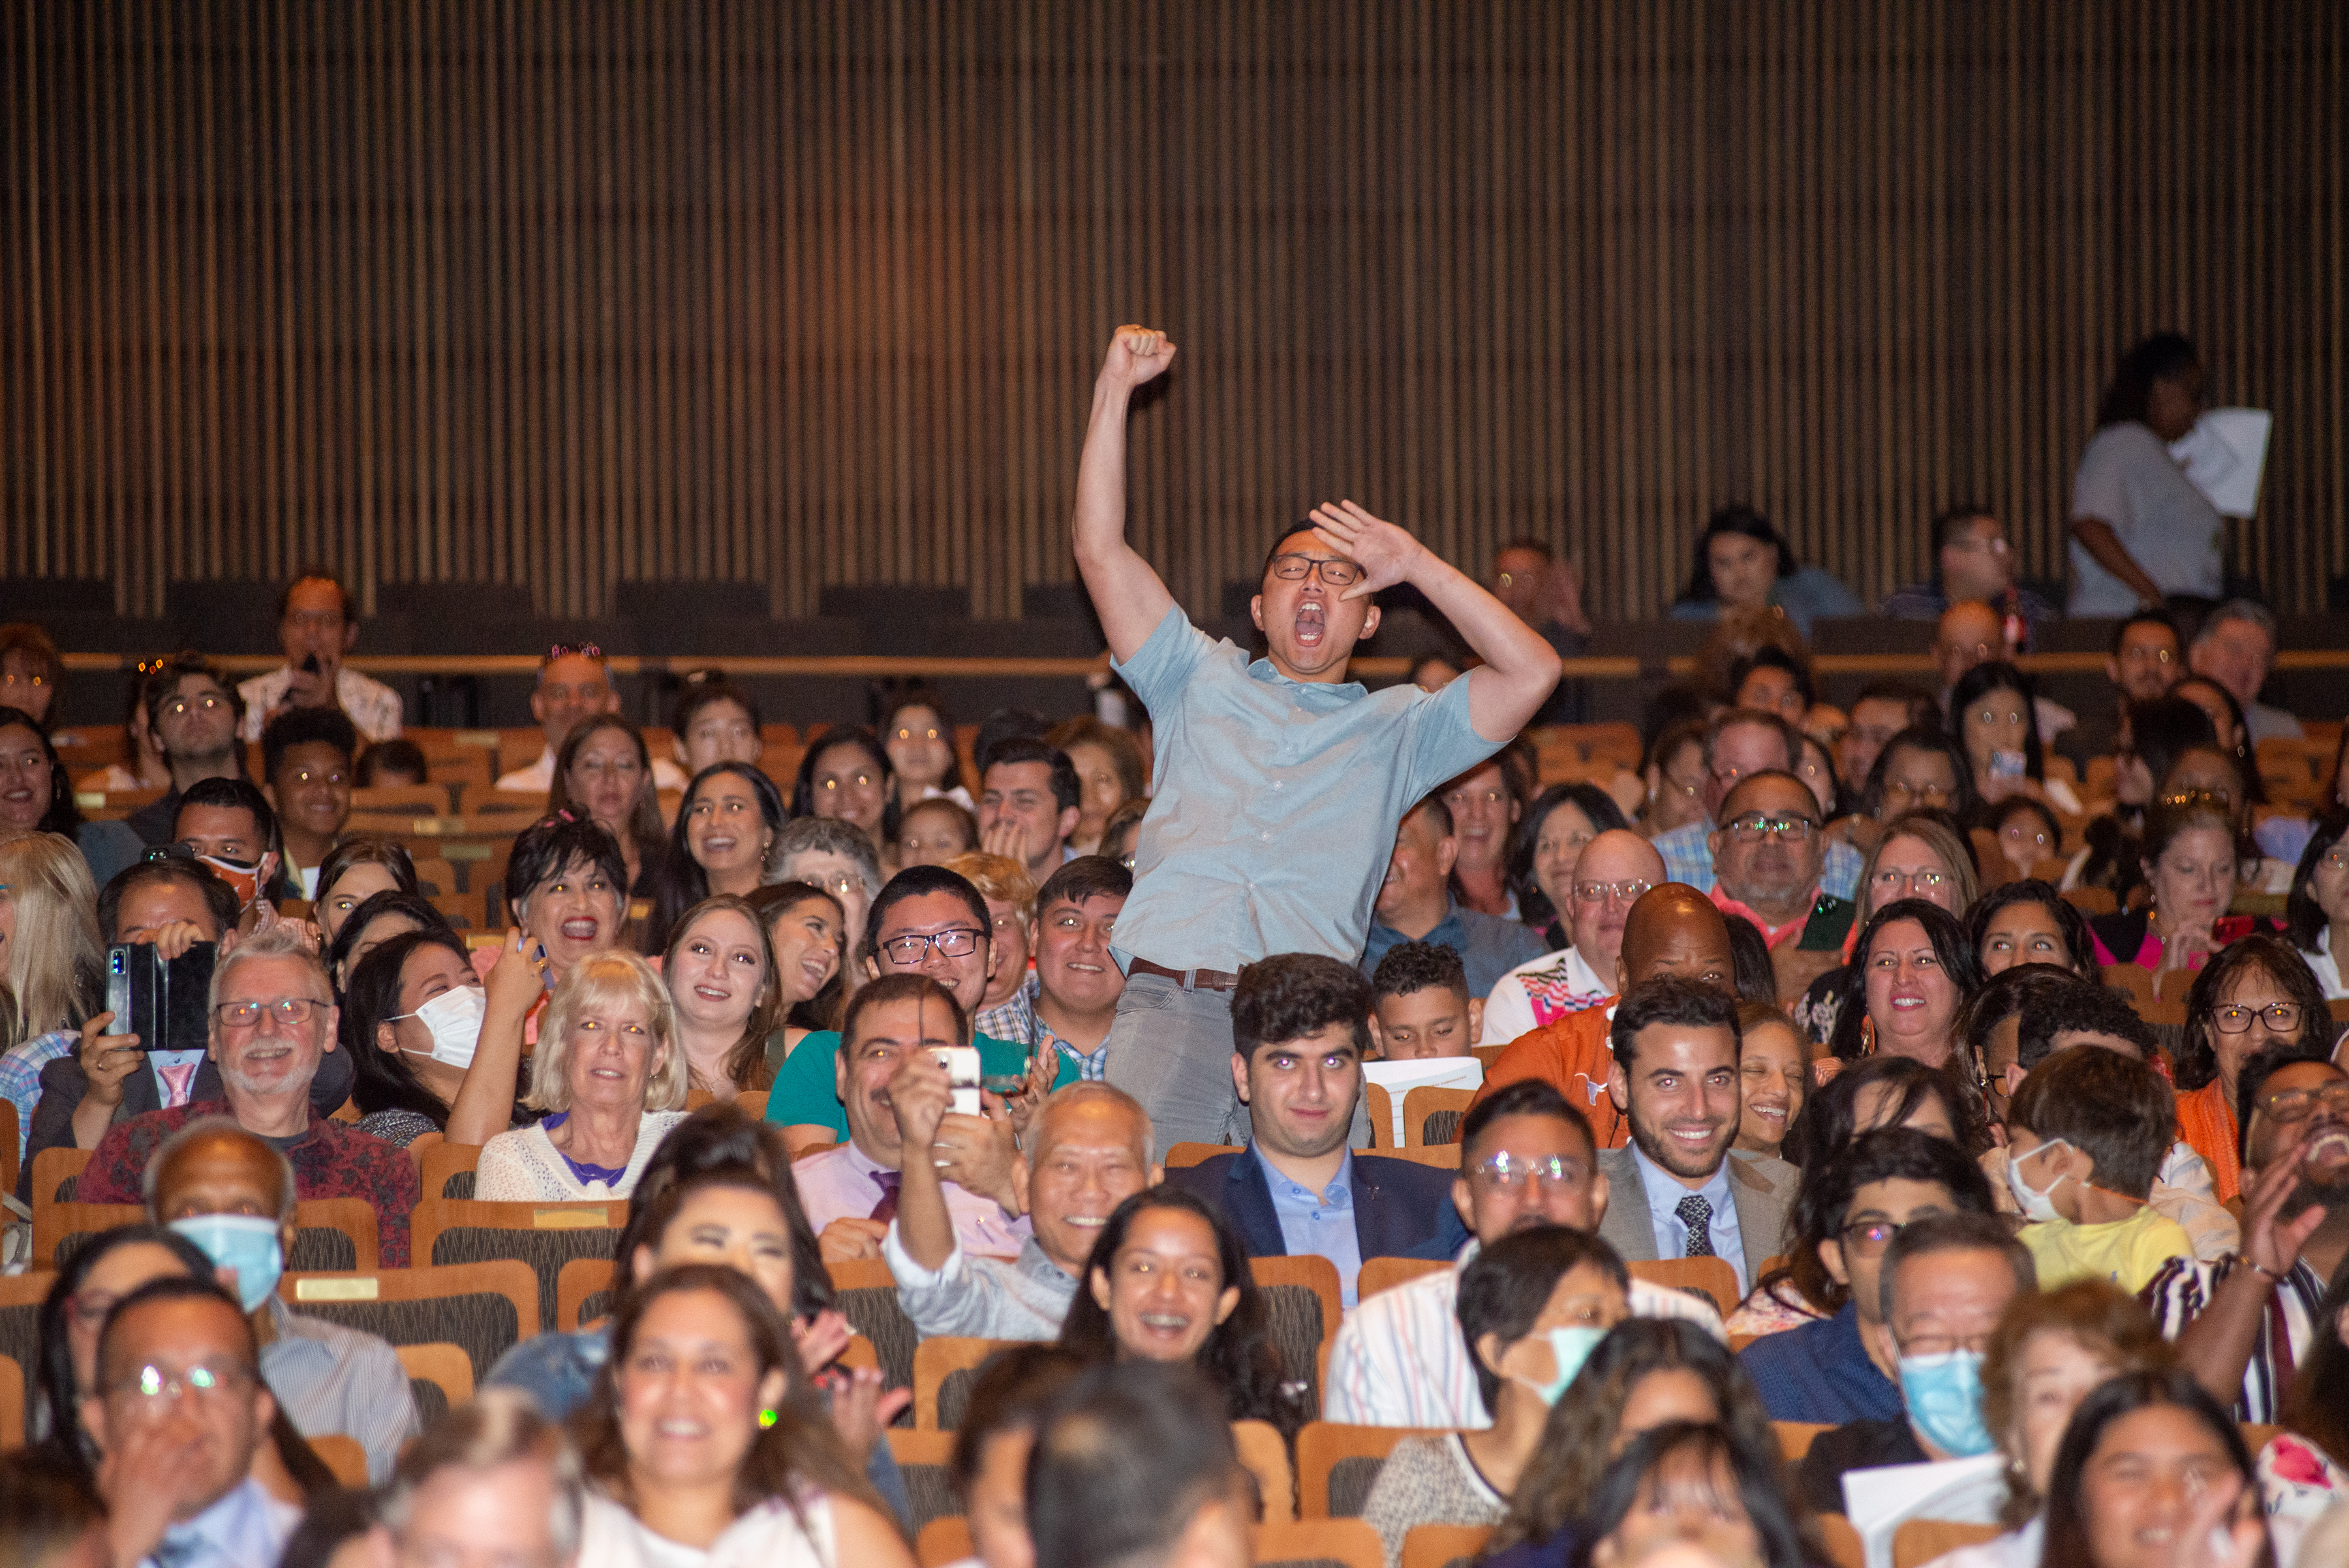 Audience member cheering in full auditorium.